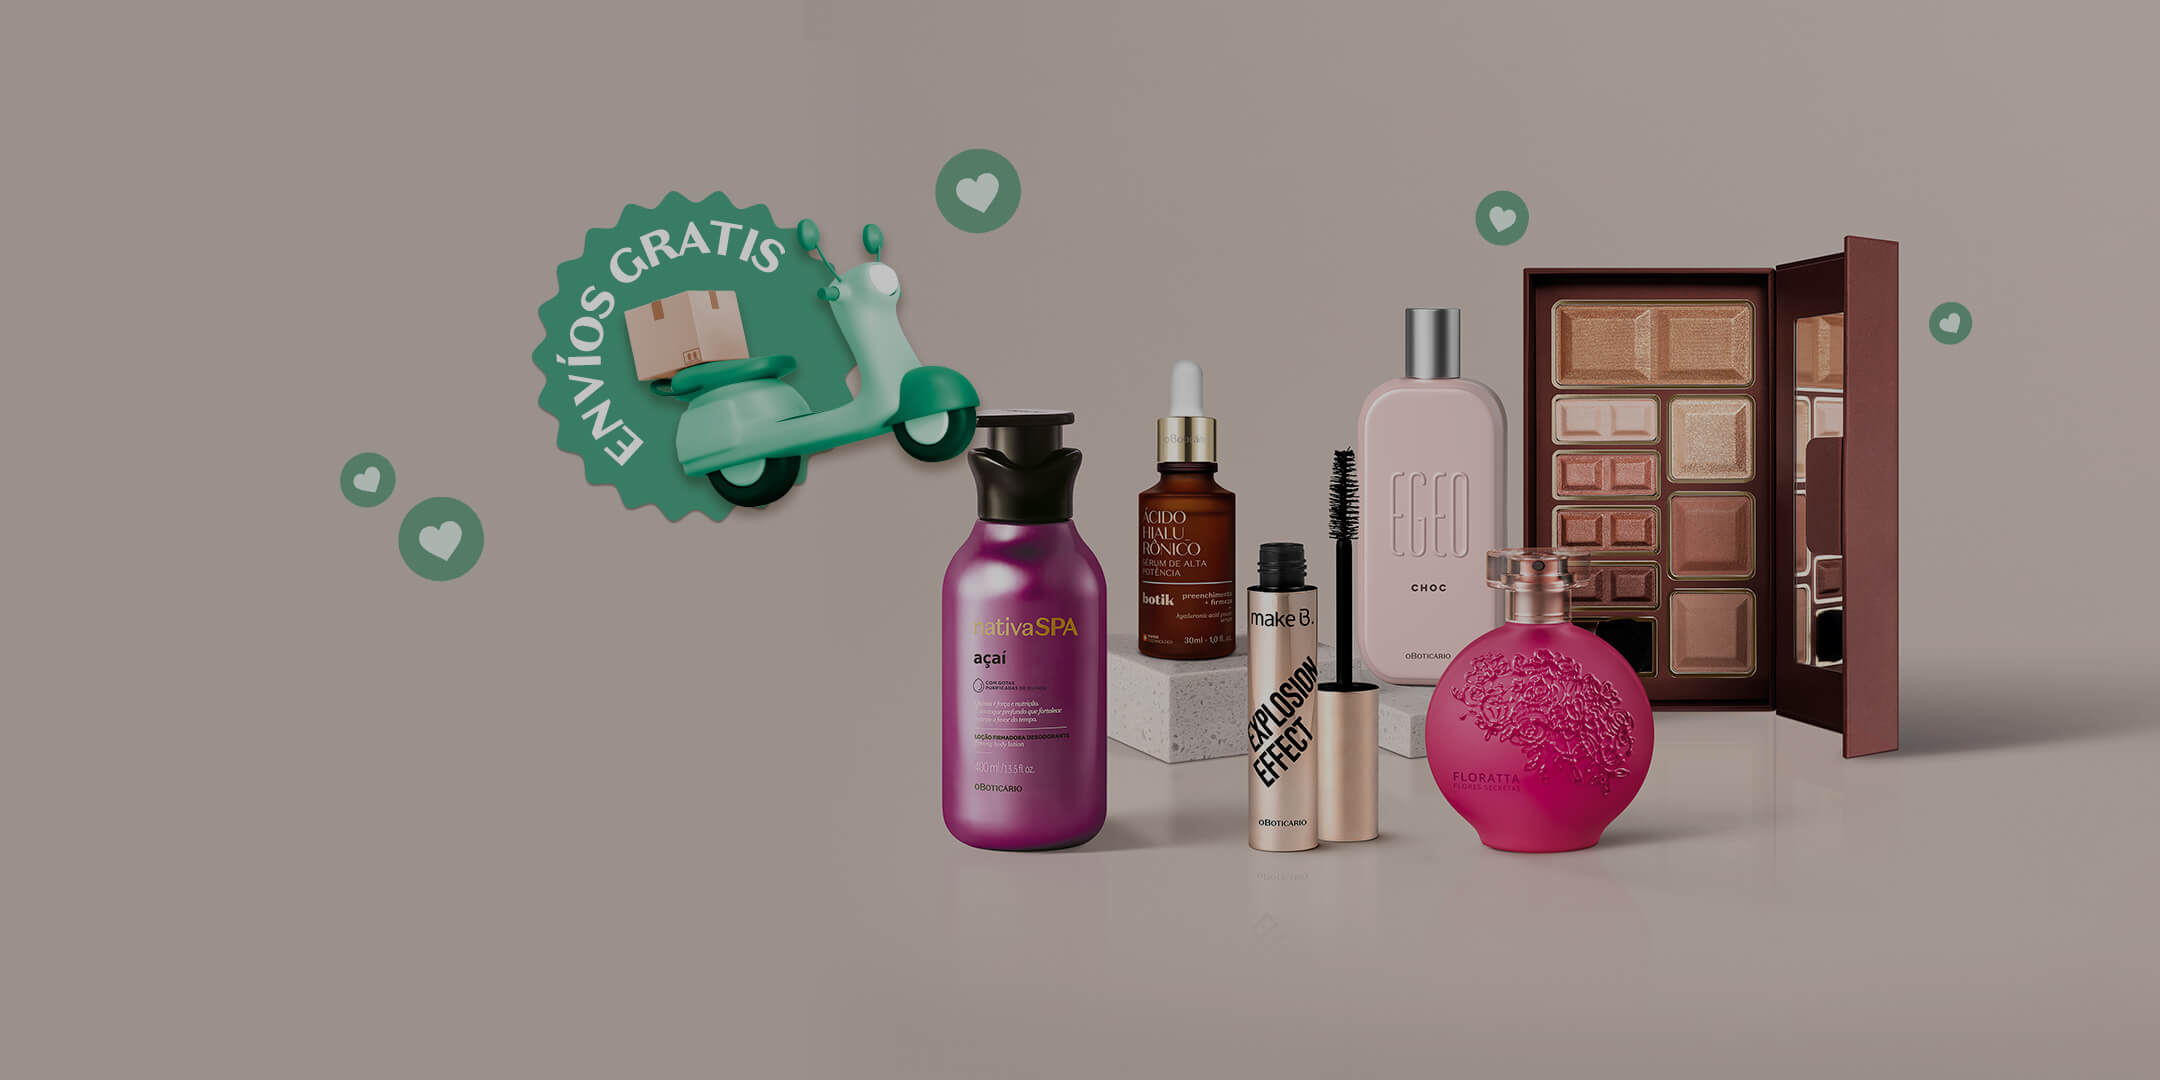 Kit de experimentación con productos de belleza Enero en Oboticário Colombia